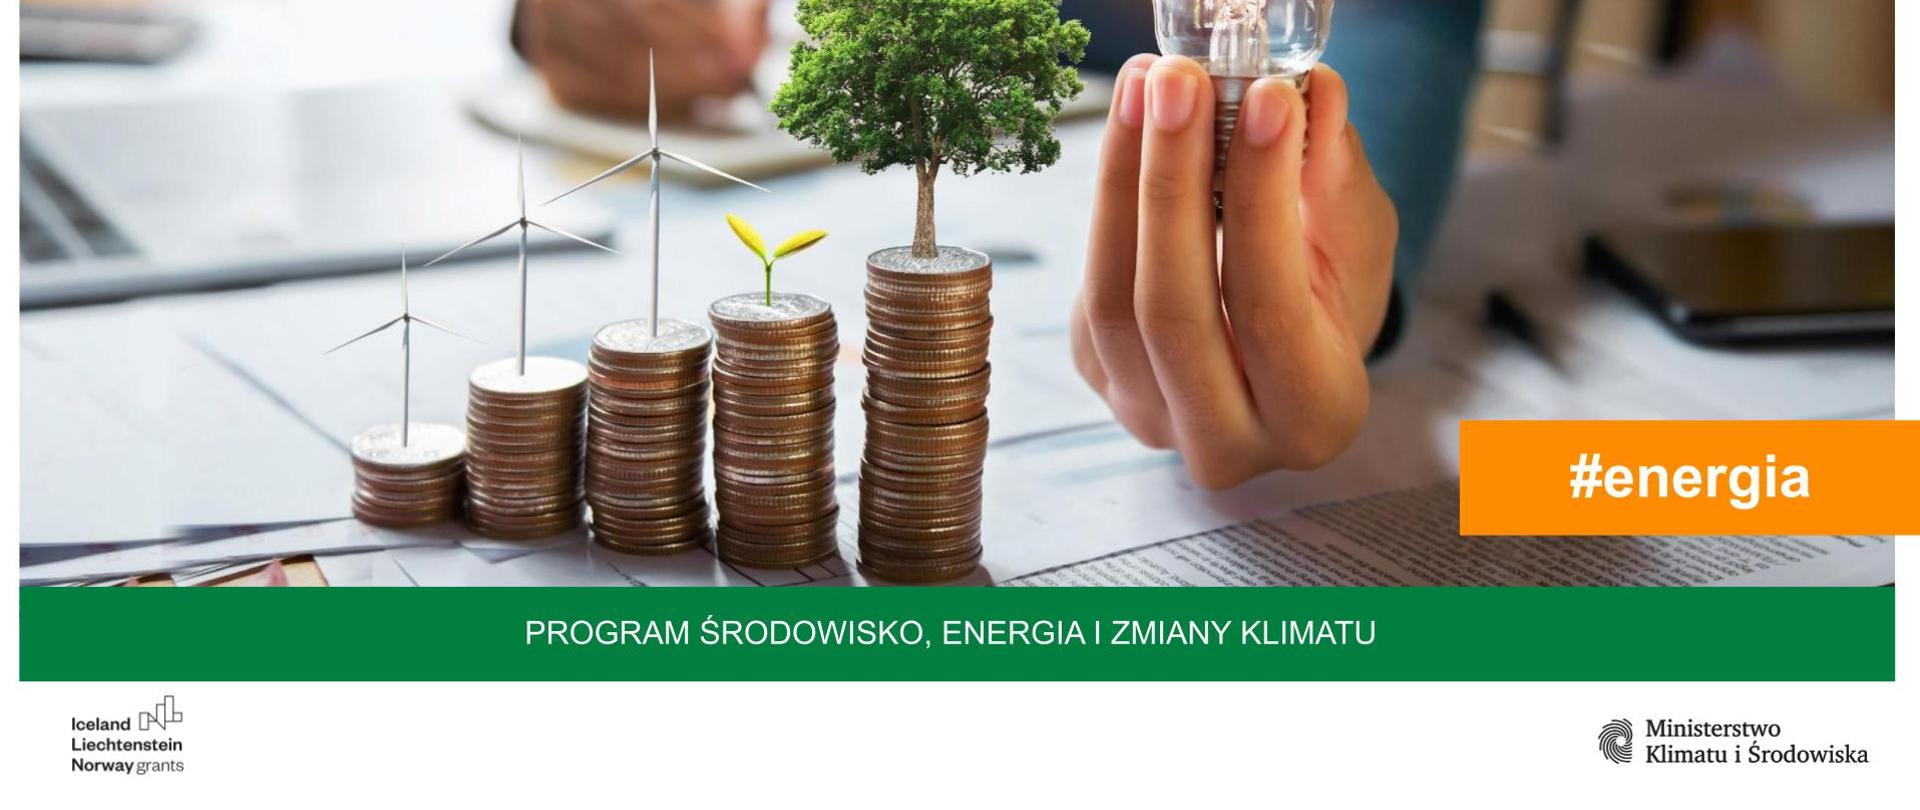 Energia_w_Programie_Środowisko_Energia_i_Zmiany_Klimatu_MF_EOG